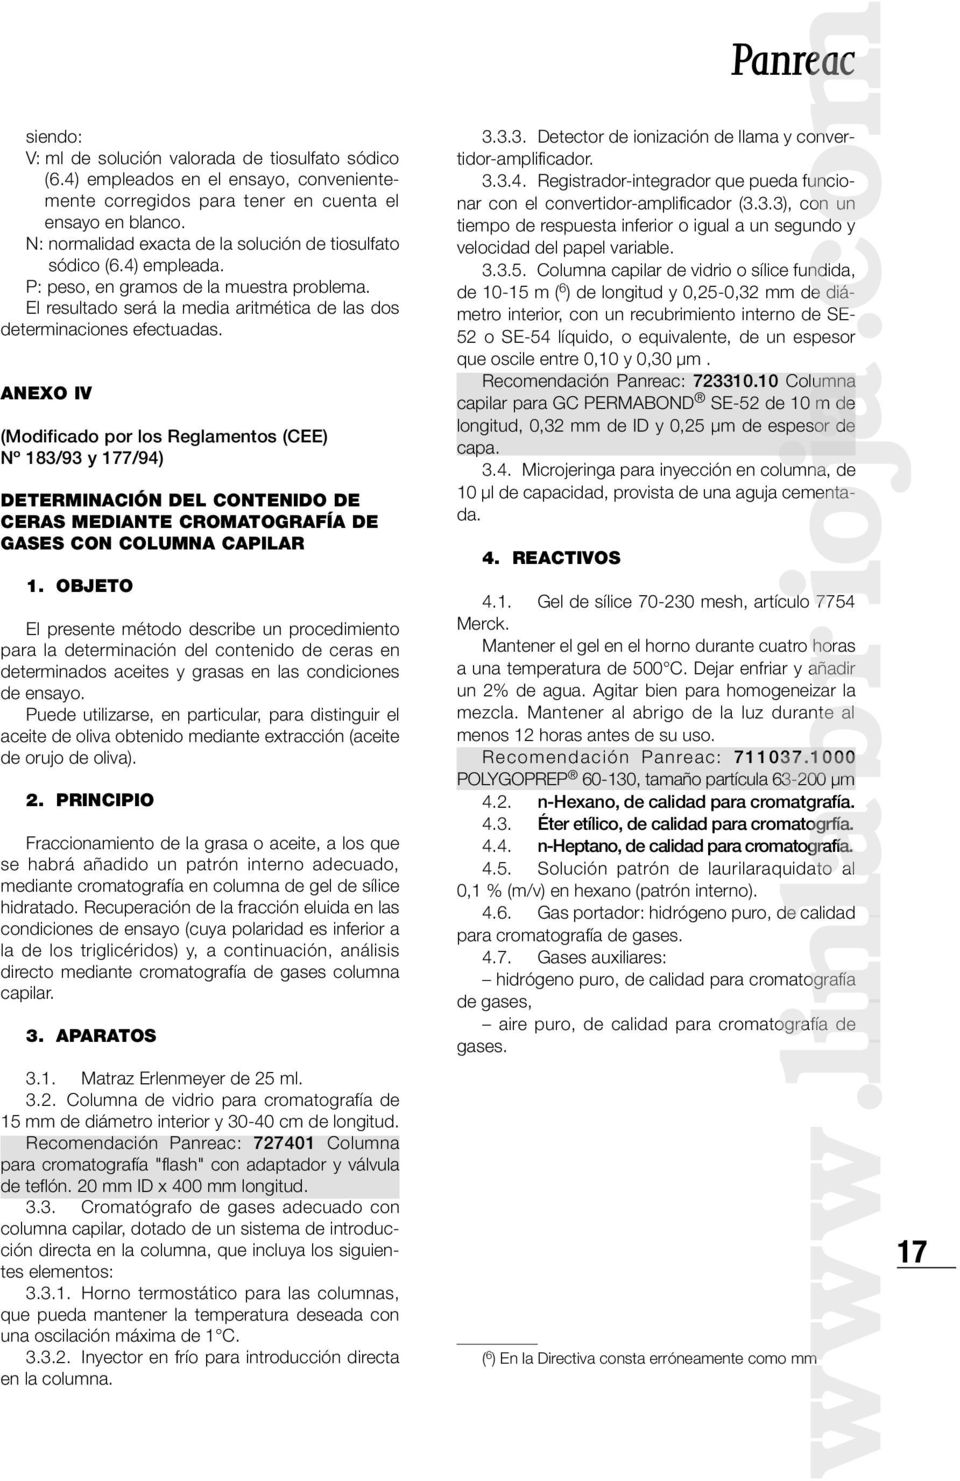 ANEXO IV (Modificado por los Reglamentos (CEE) Nº 183/93 y 177/94) DETERMINACIÓN DEL CONTENIDO DE CERAS MEDIANTE CROMATOGRAFÍA DE GASES CON COLUMNA CAPILAR 1.